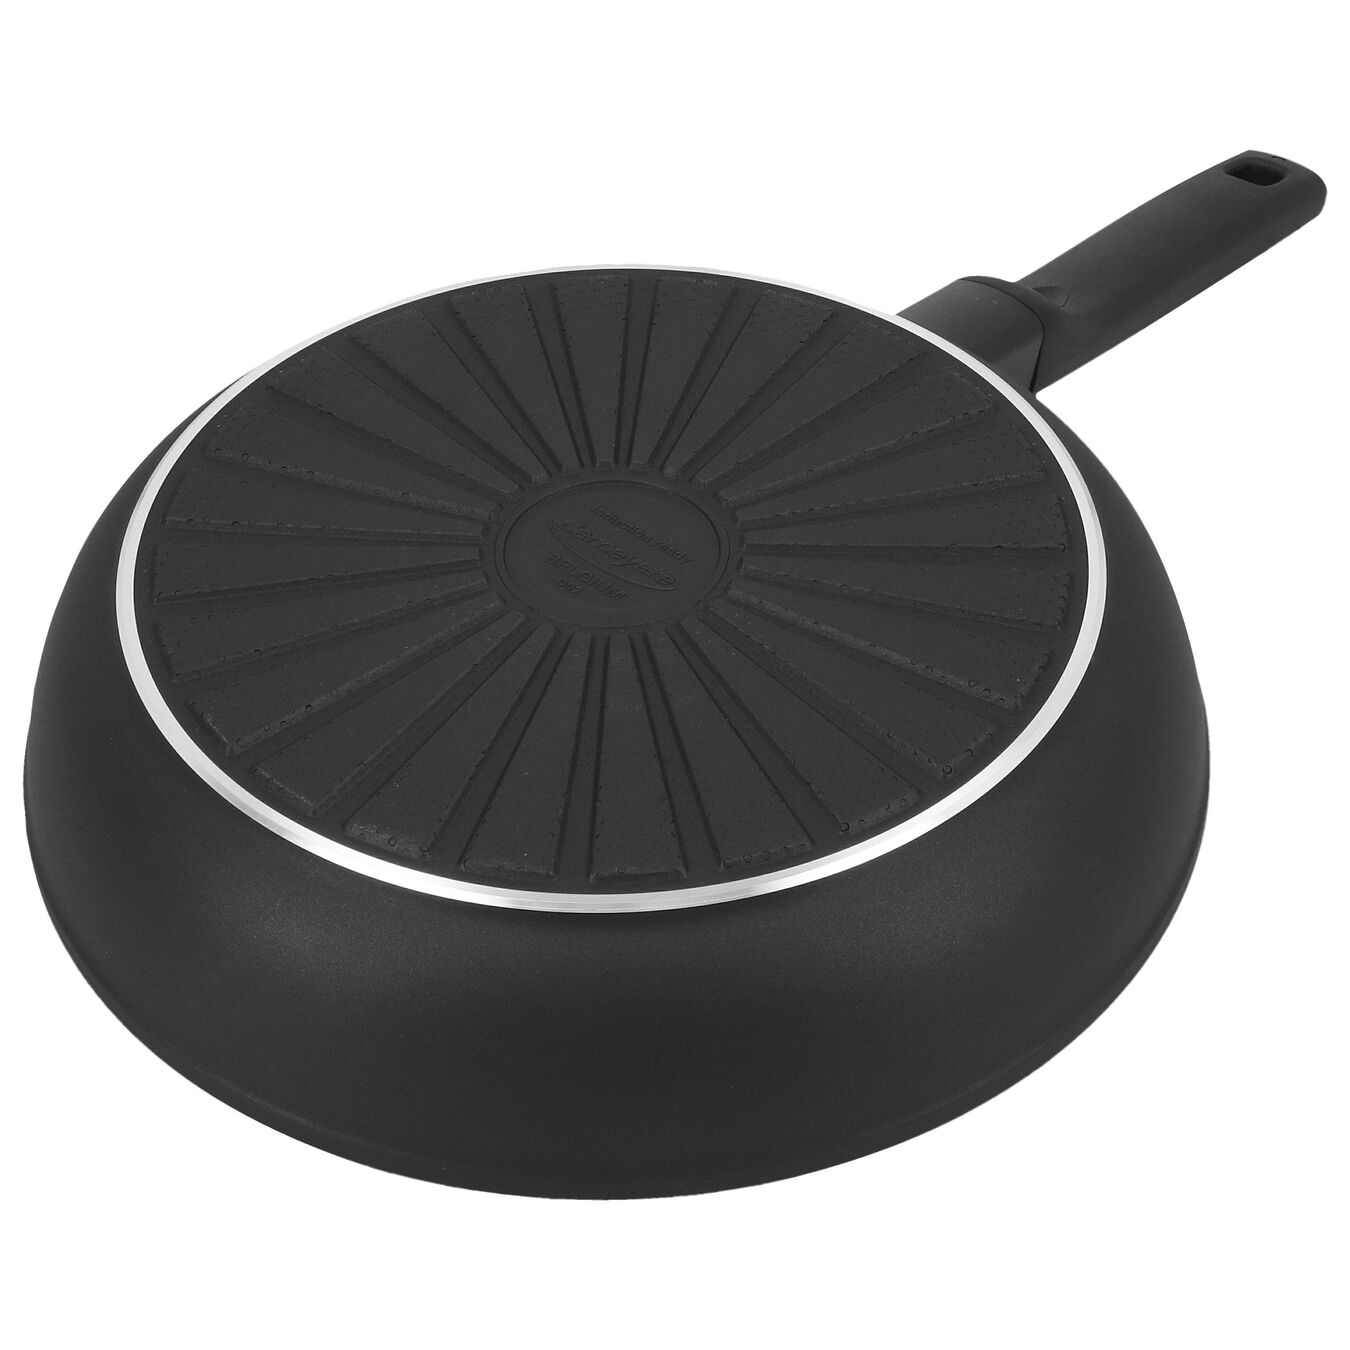 24 cm Aluminium Frying pan black,,large 2